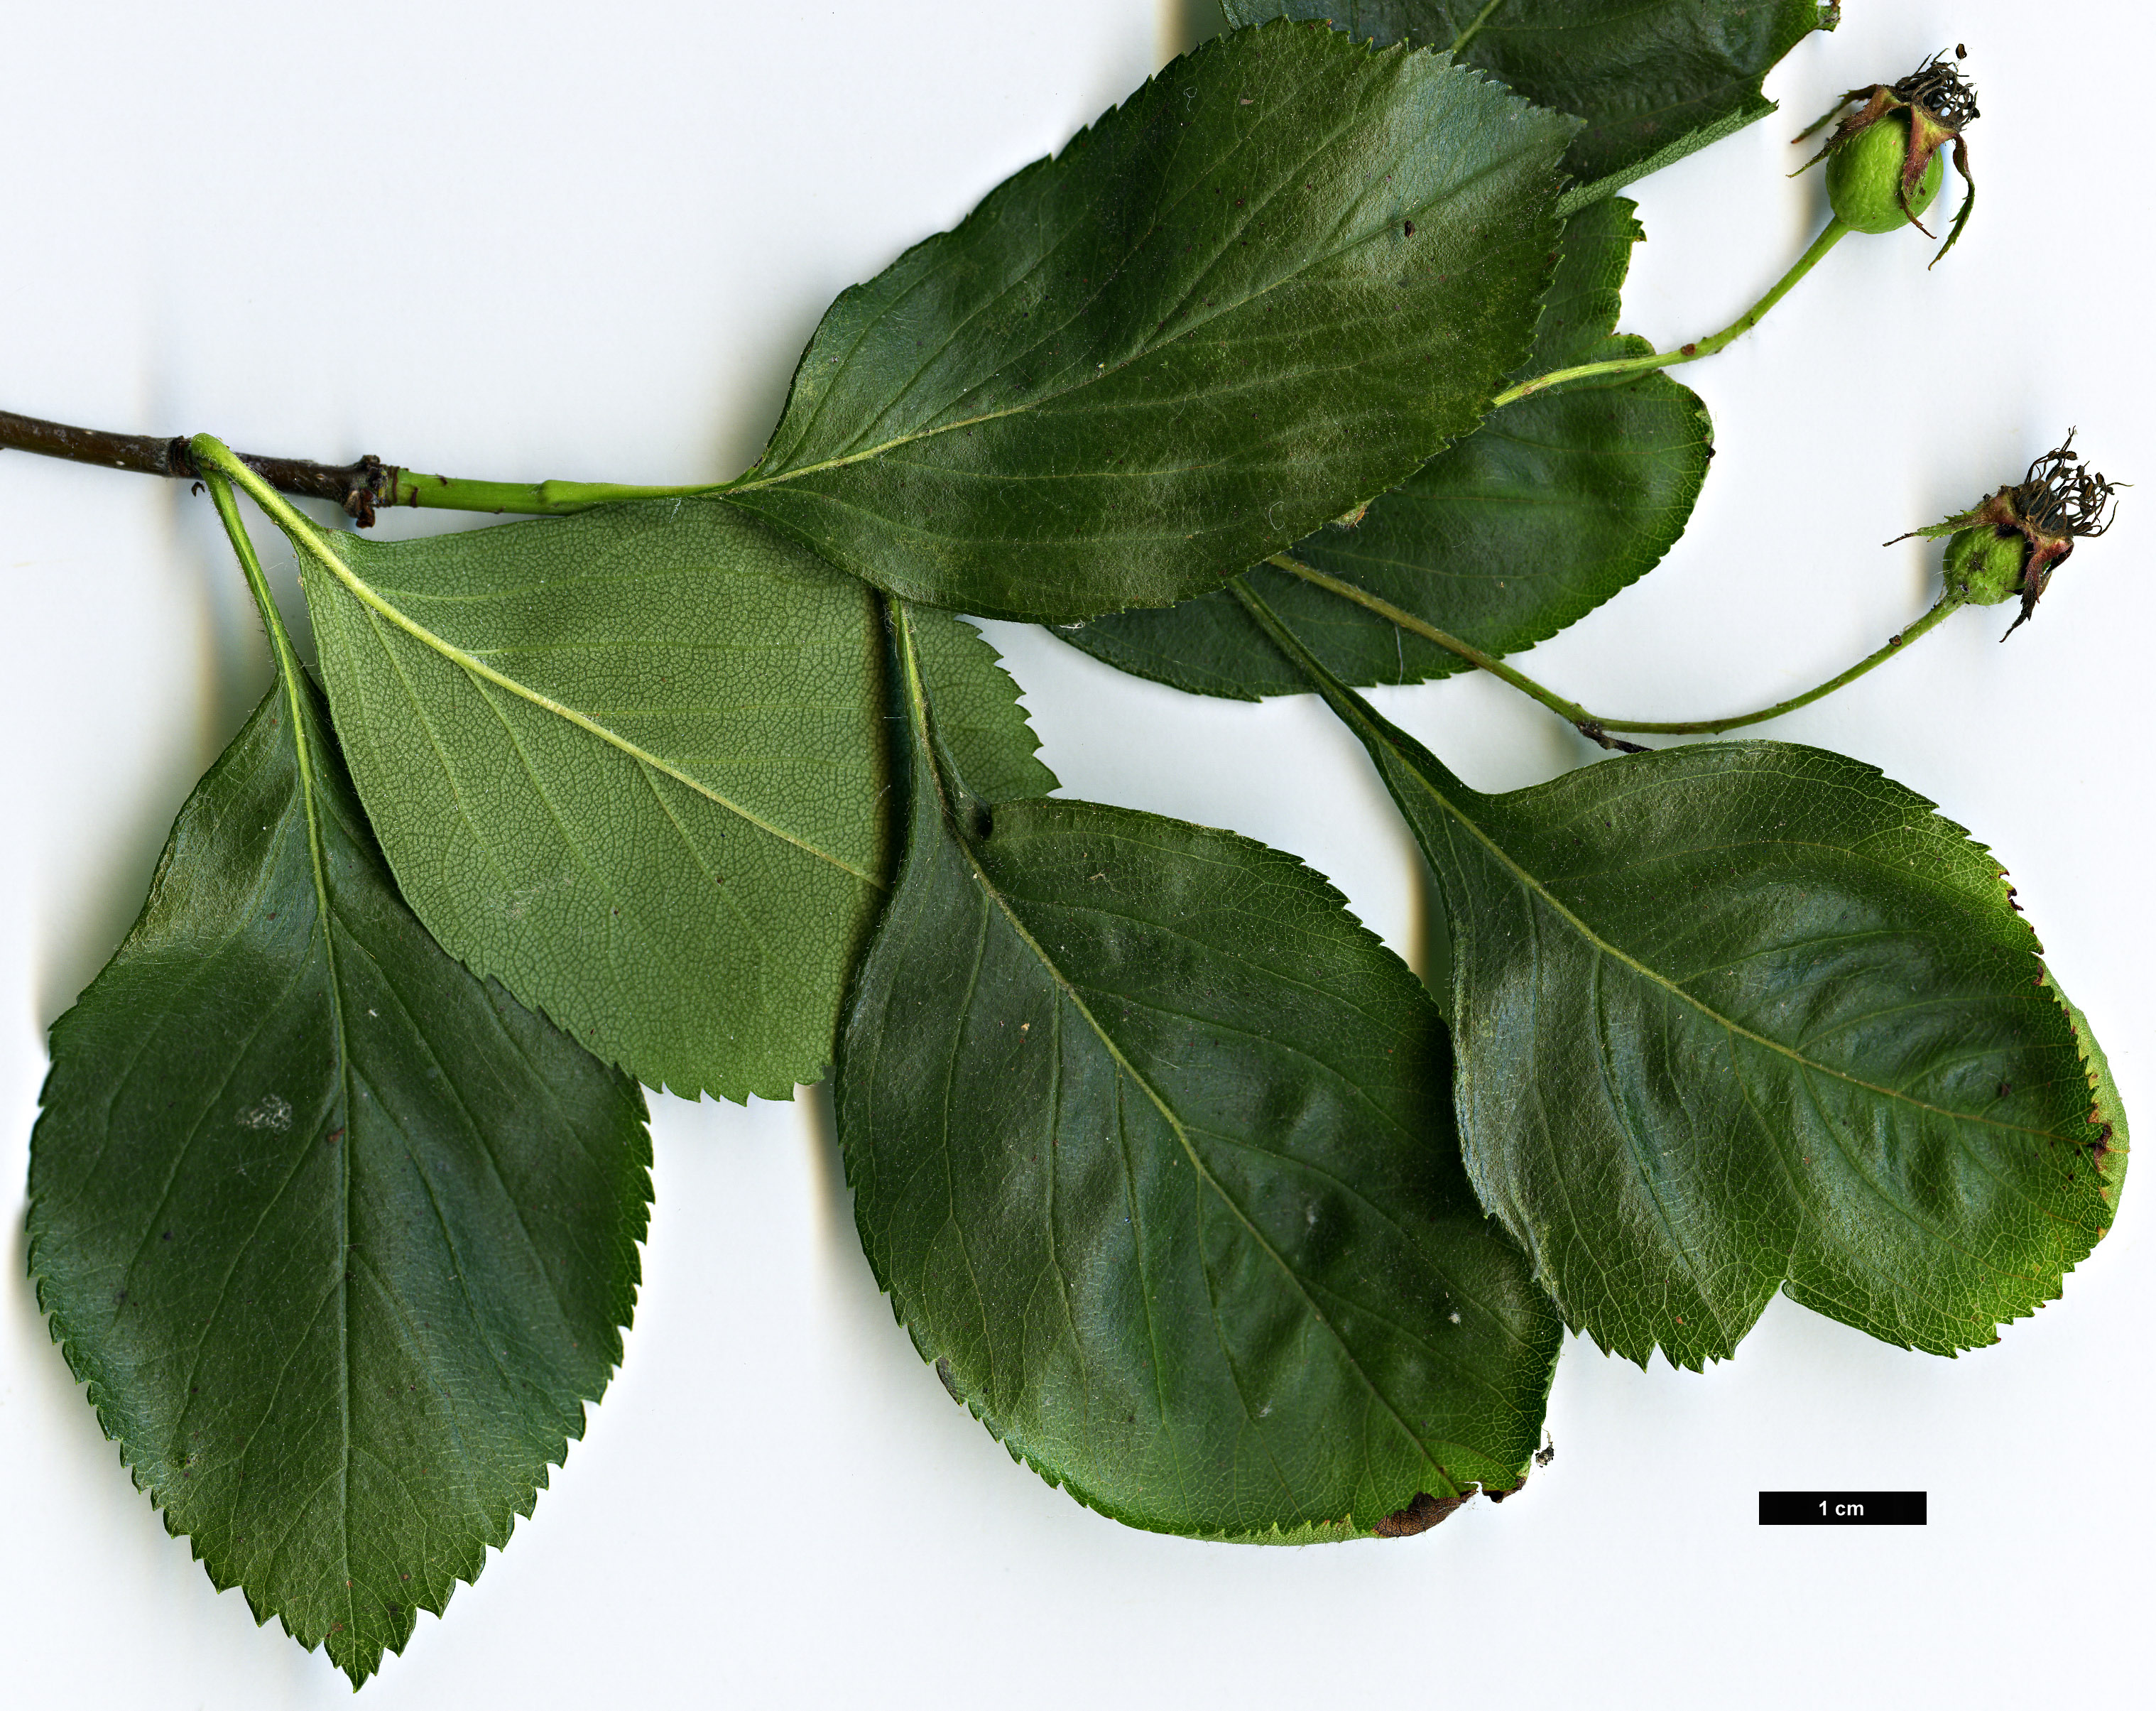 High resolution image: Family: Rosaceae - Genus: Crataegus - Taxon: ×simulata (C.calpodendron × C. crus-gallii)